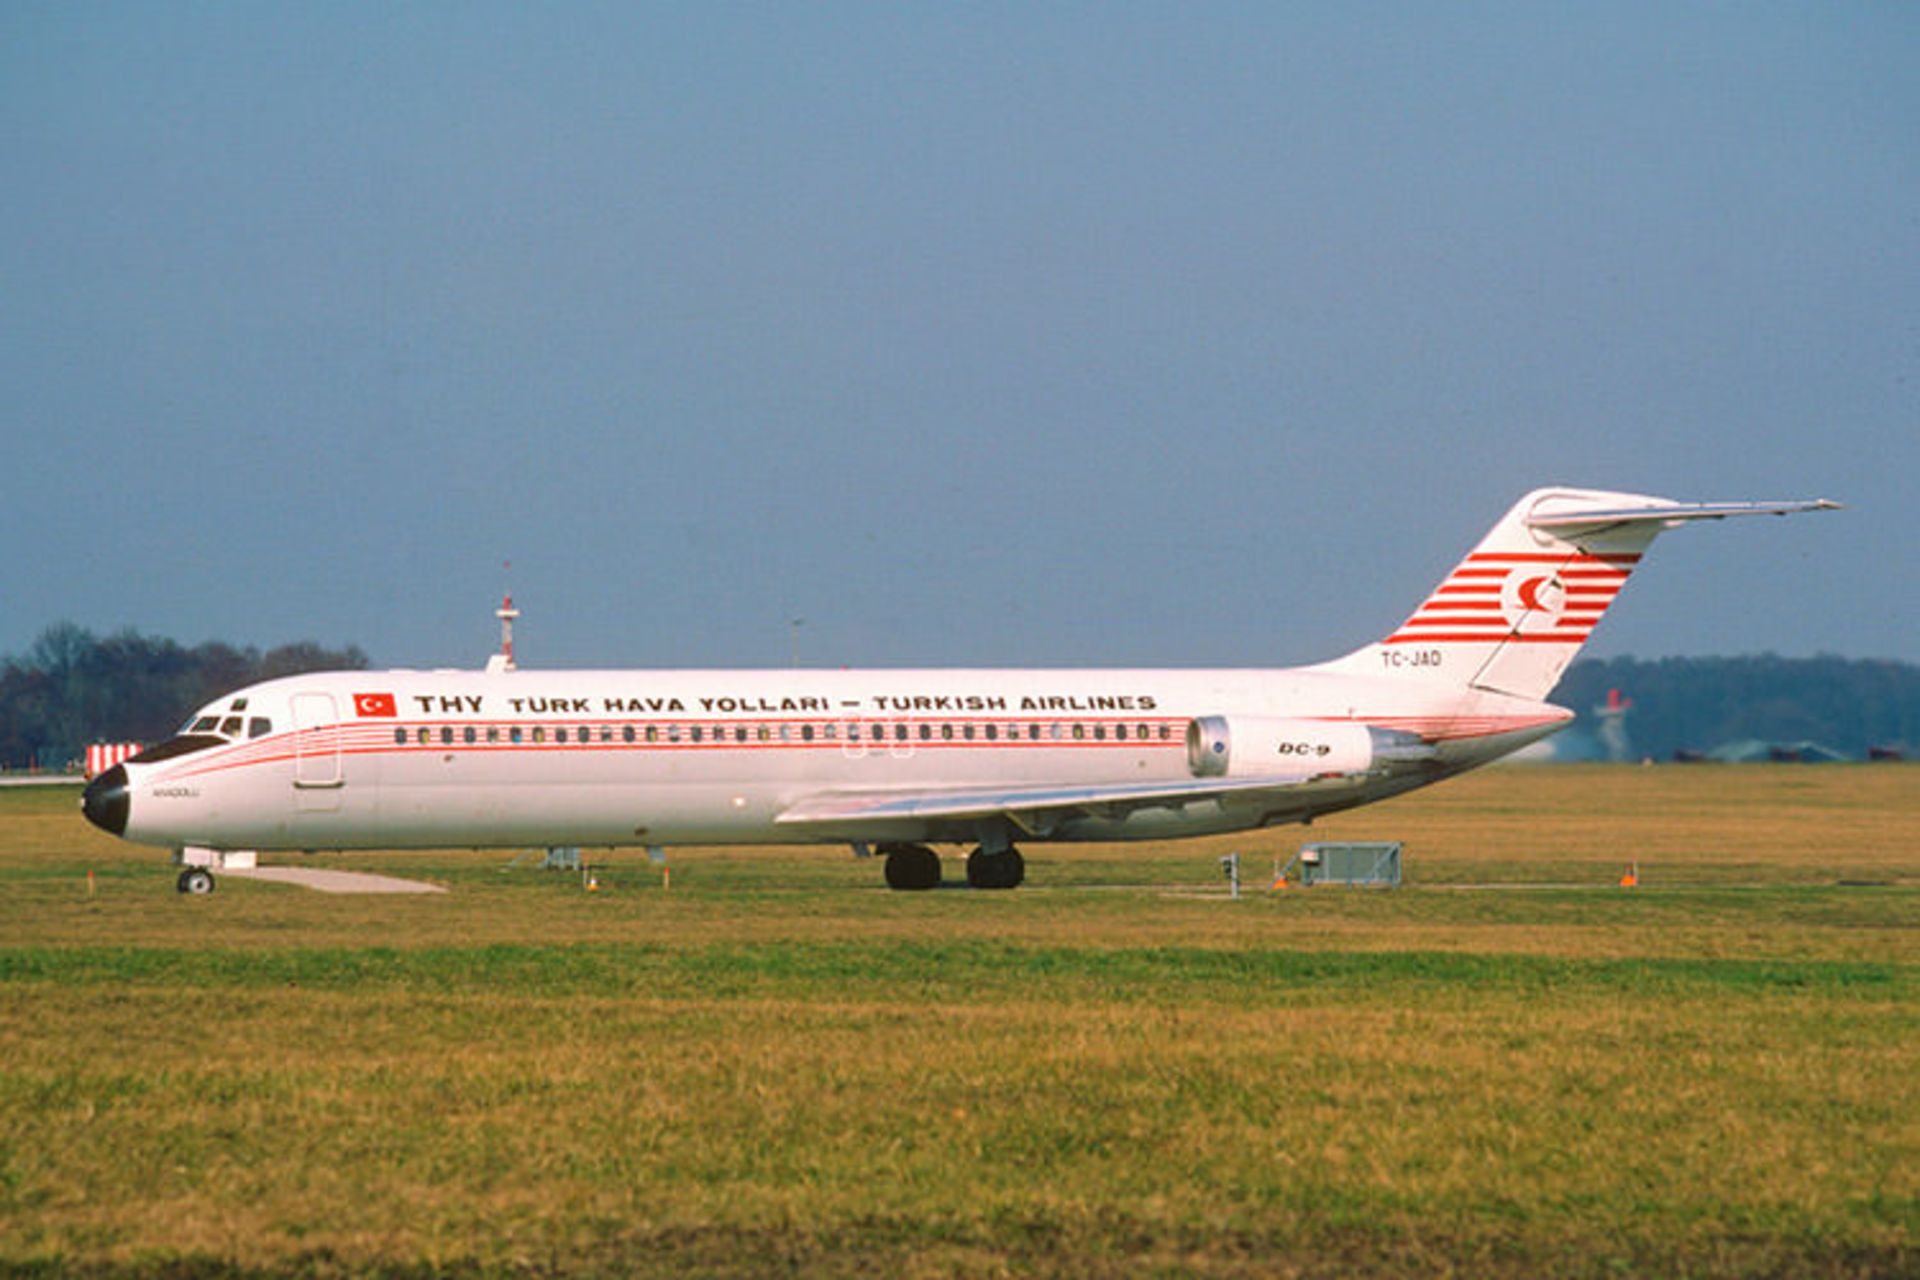 مرجع متخصصين ايران نماي بيروني DC-9